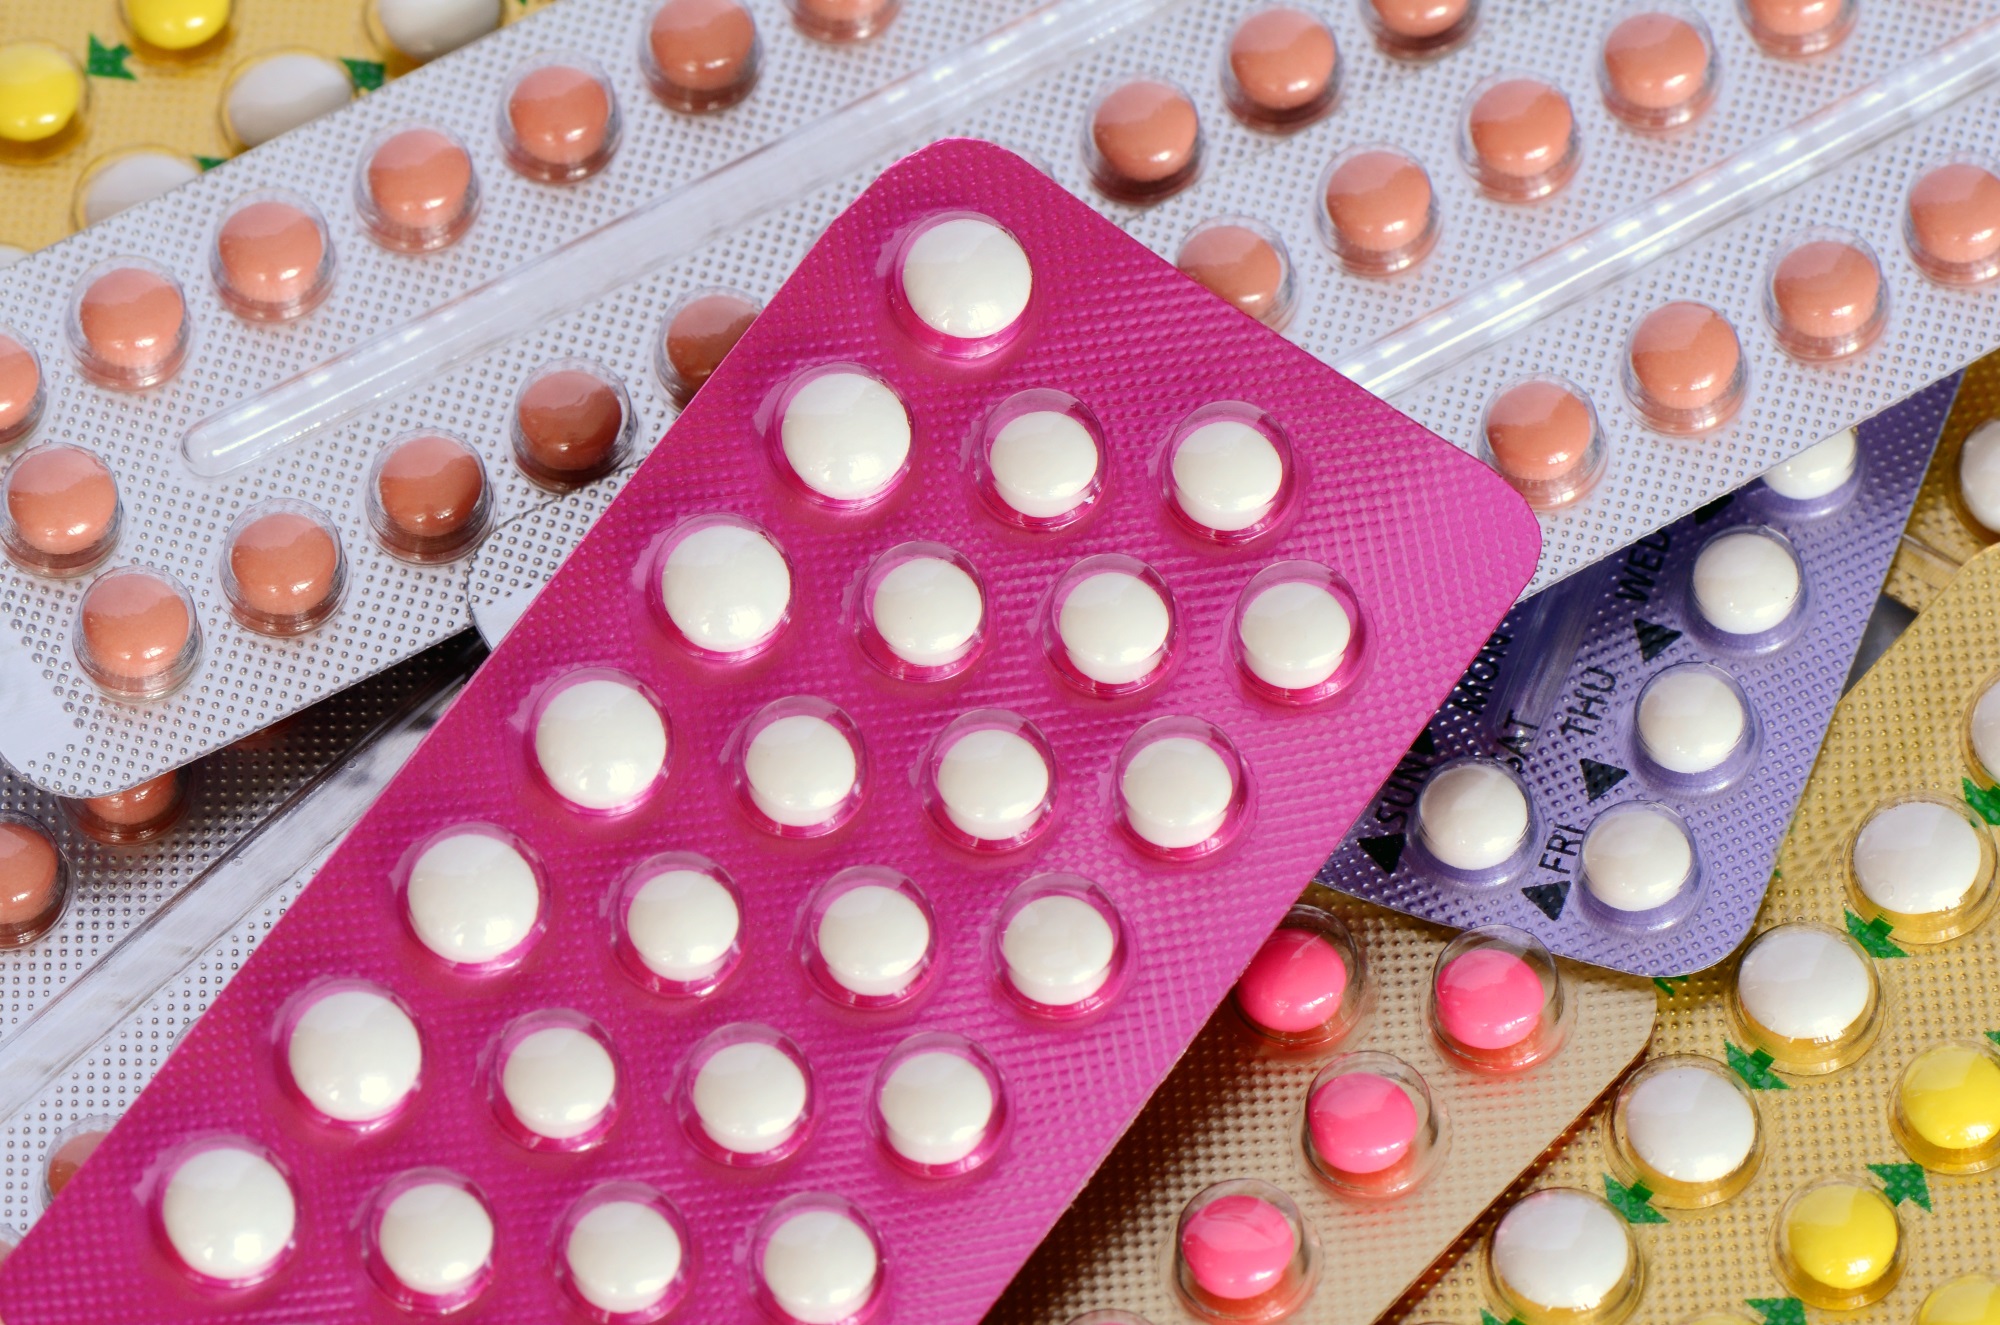 Arrêter la pilule : les conséquences et effets secondaires sur le ...